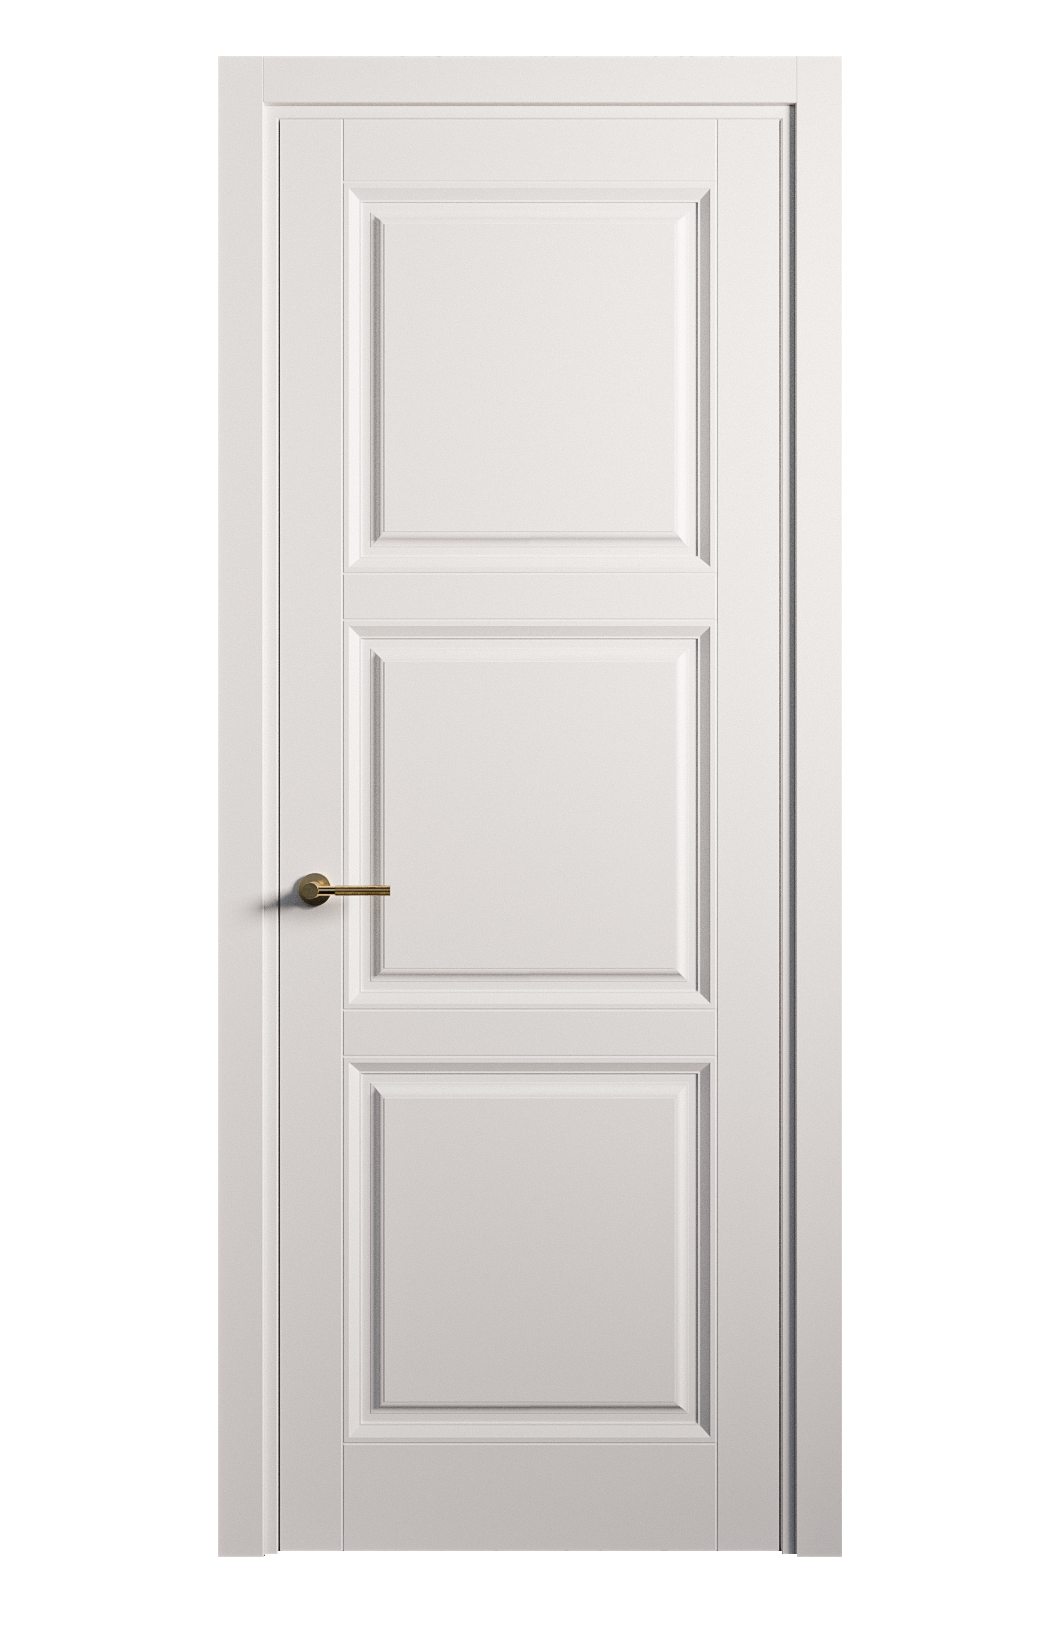 Межкомнатная дверь Venezia-3 глухая эмаль ral 9003 25761